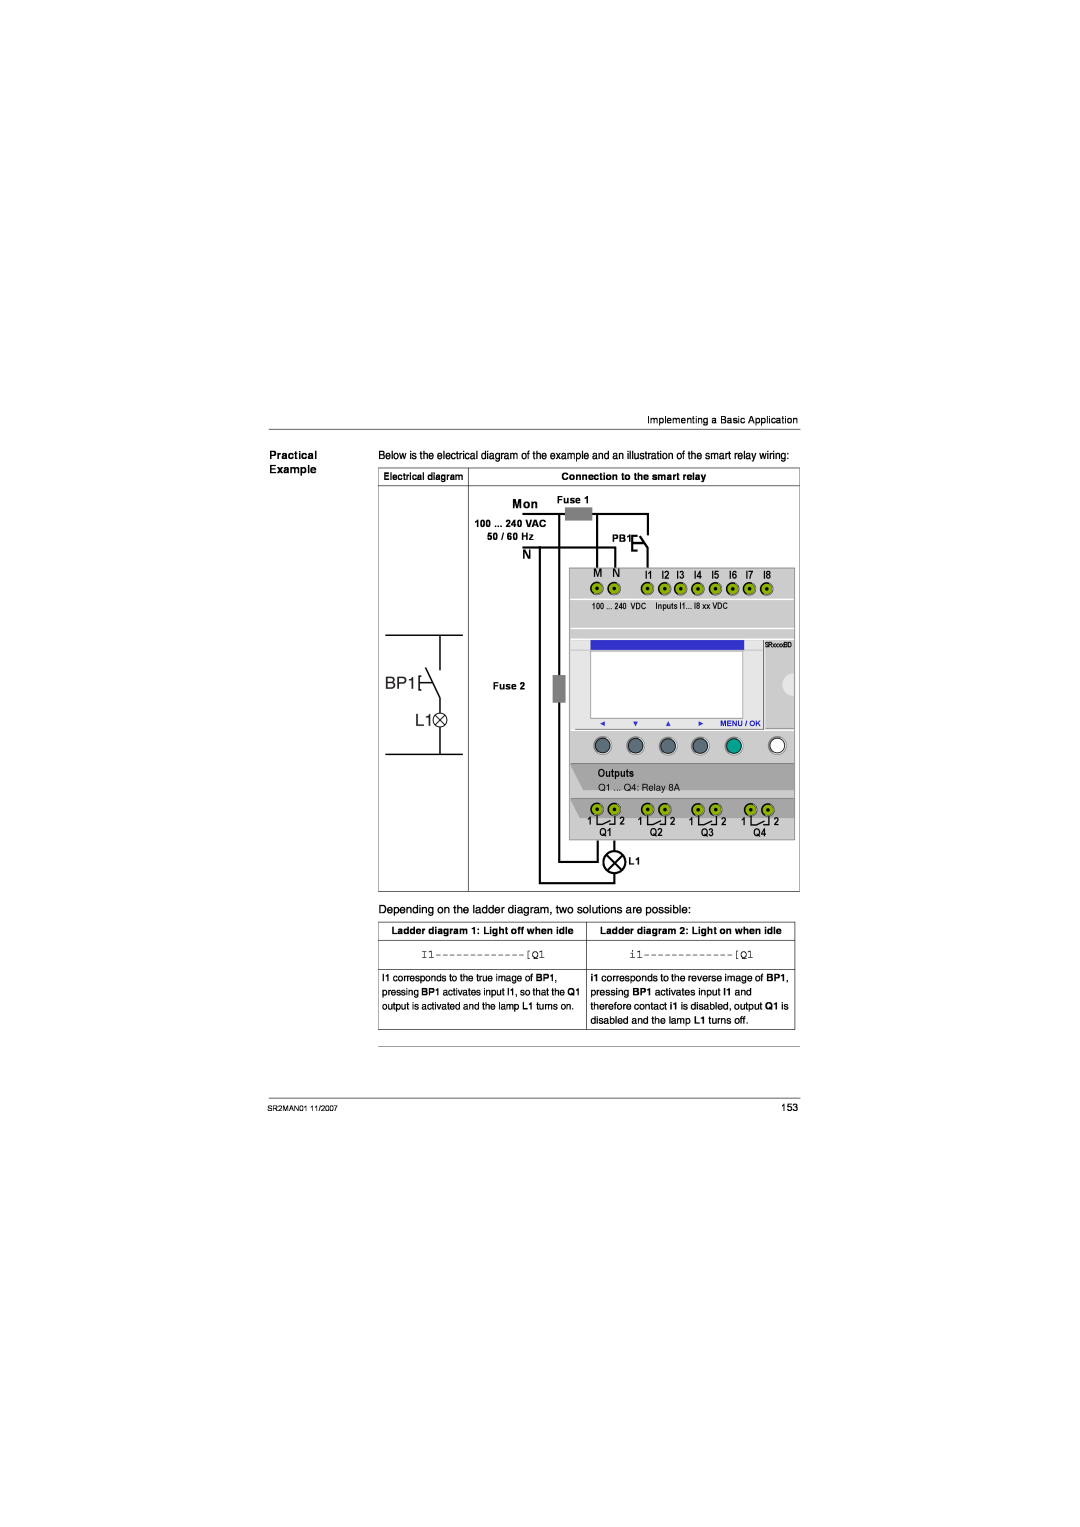 Schneider Electric SR2MAN01 Practical Example, I2 I3 I4 I5 I6 I7, Outputs, Q1 ... Q4 Relay 8A, Electrical diagram 